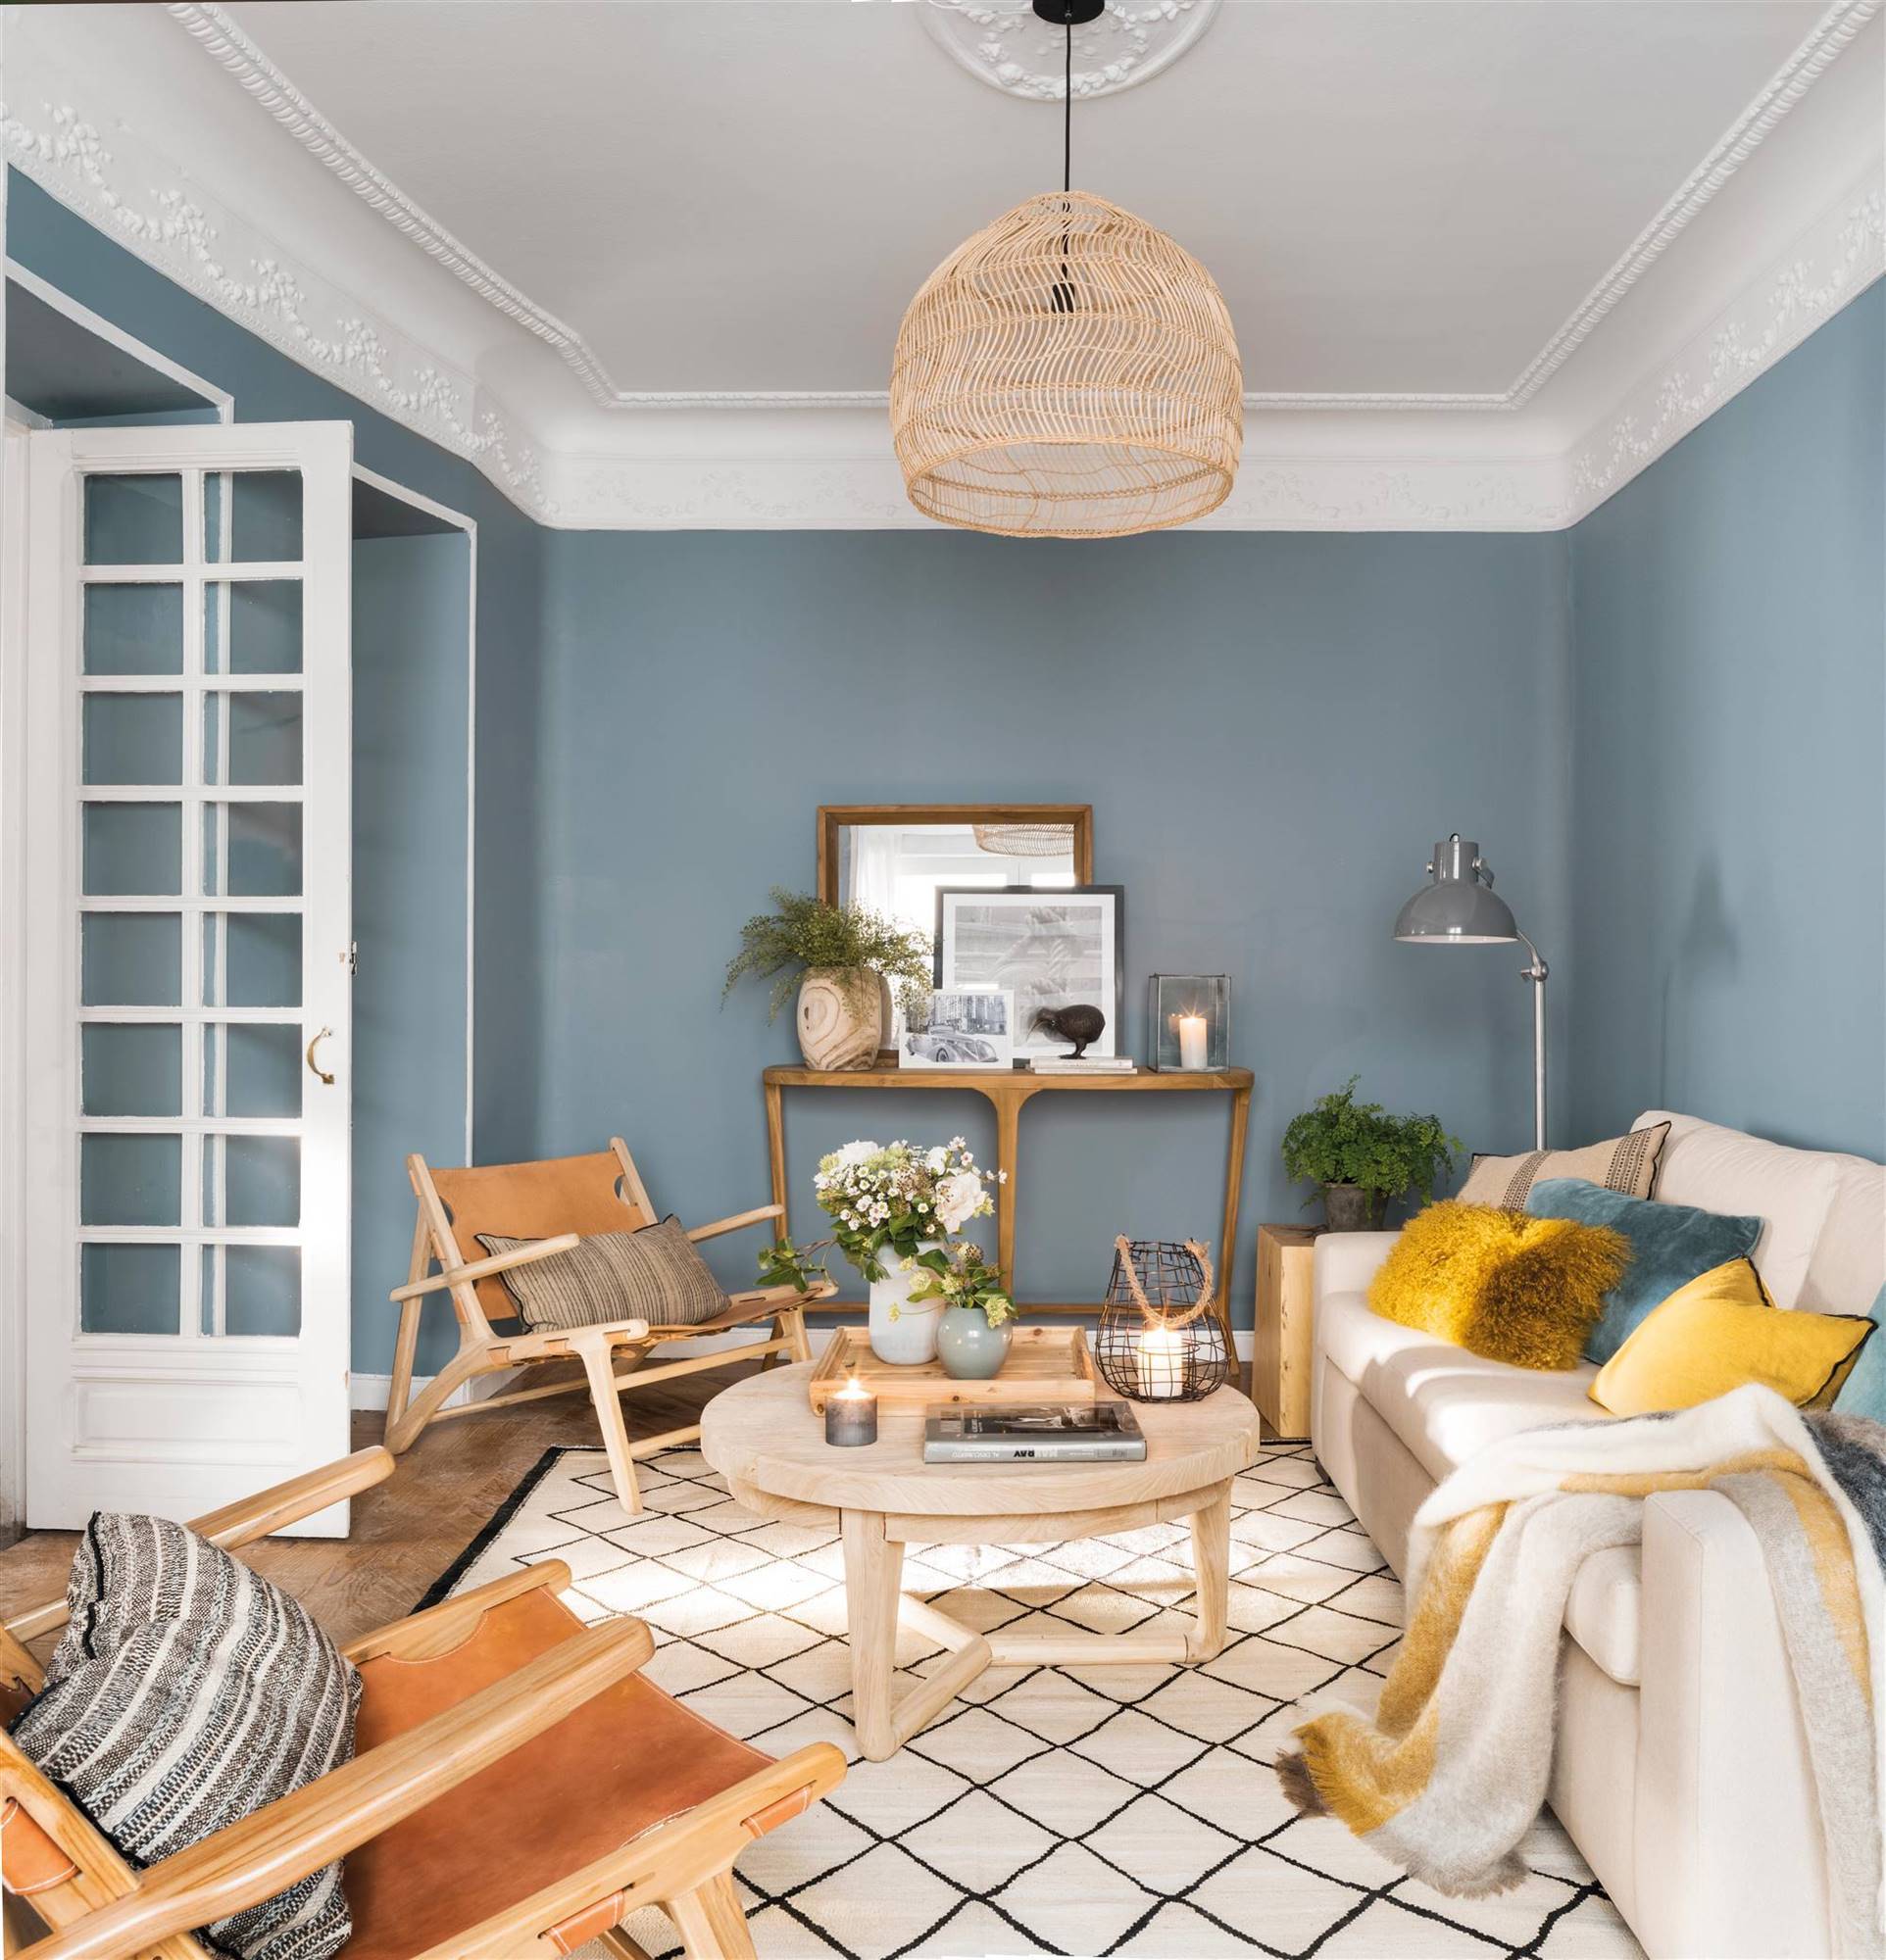 Salón con pared azul con molduras decorativas y alfombra con dibujo geométrico.